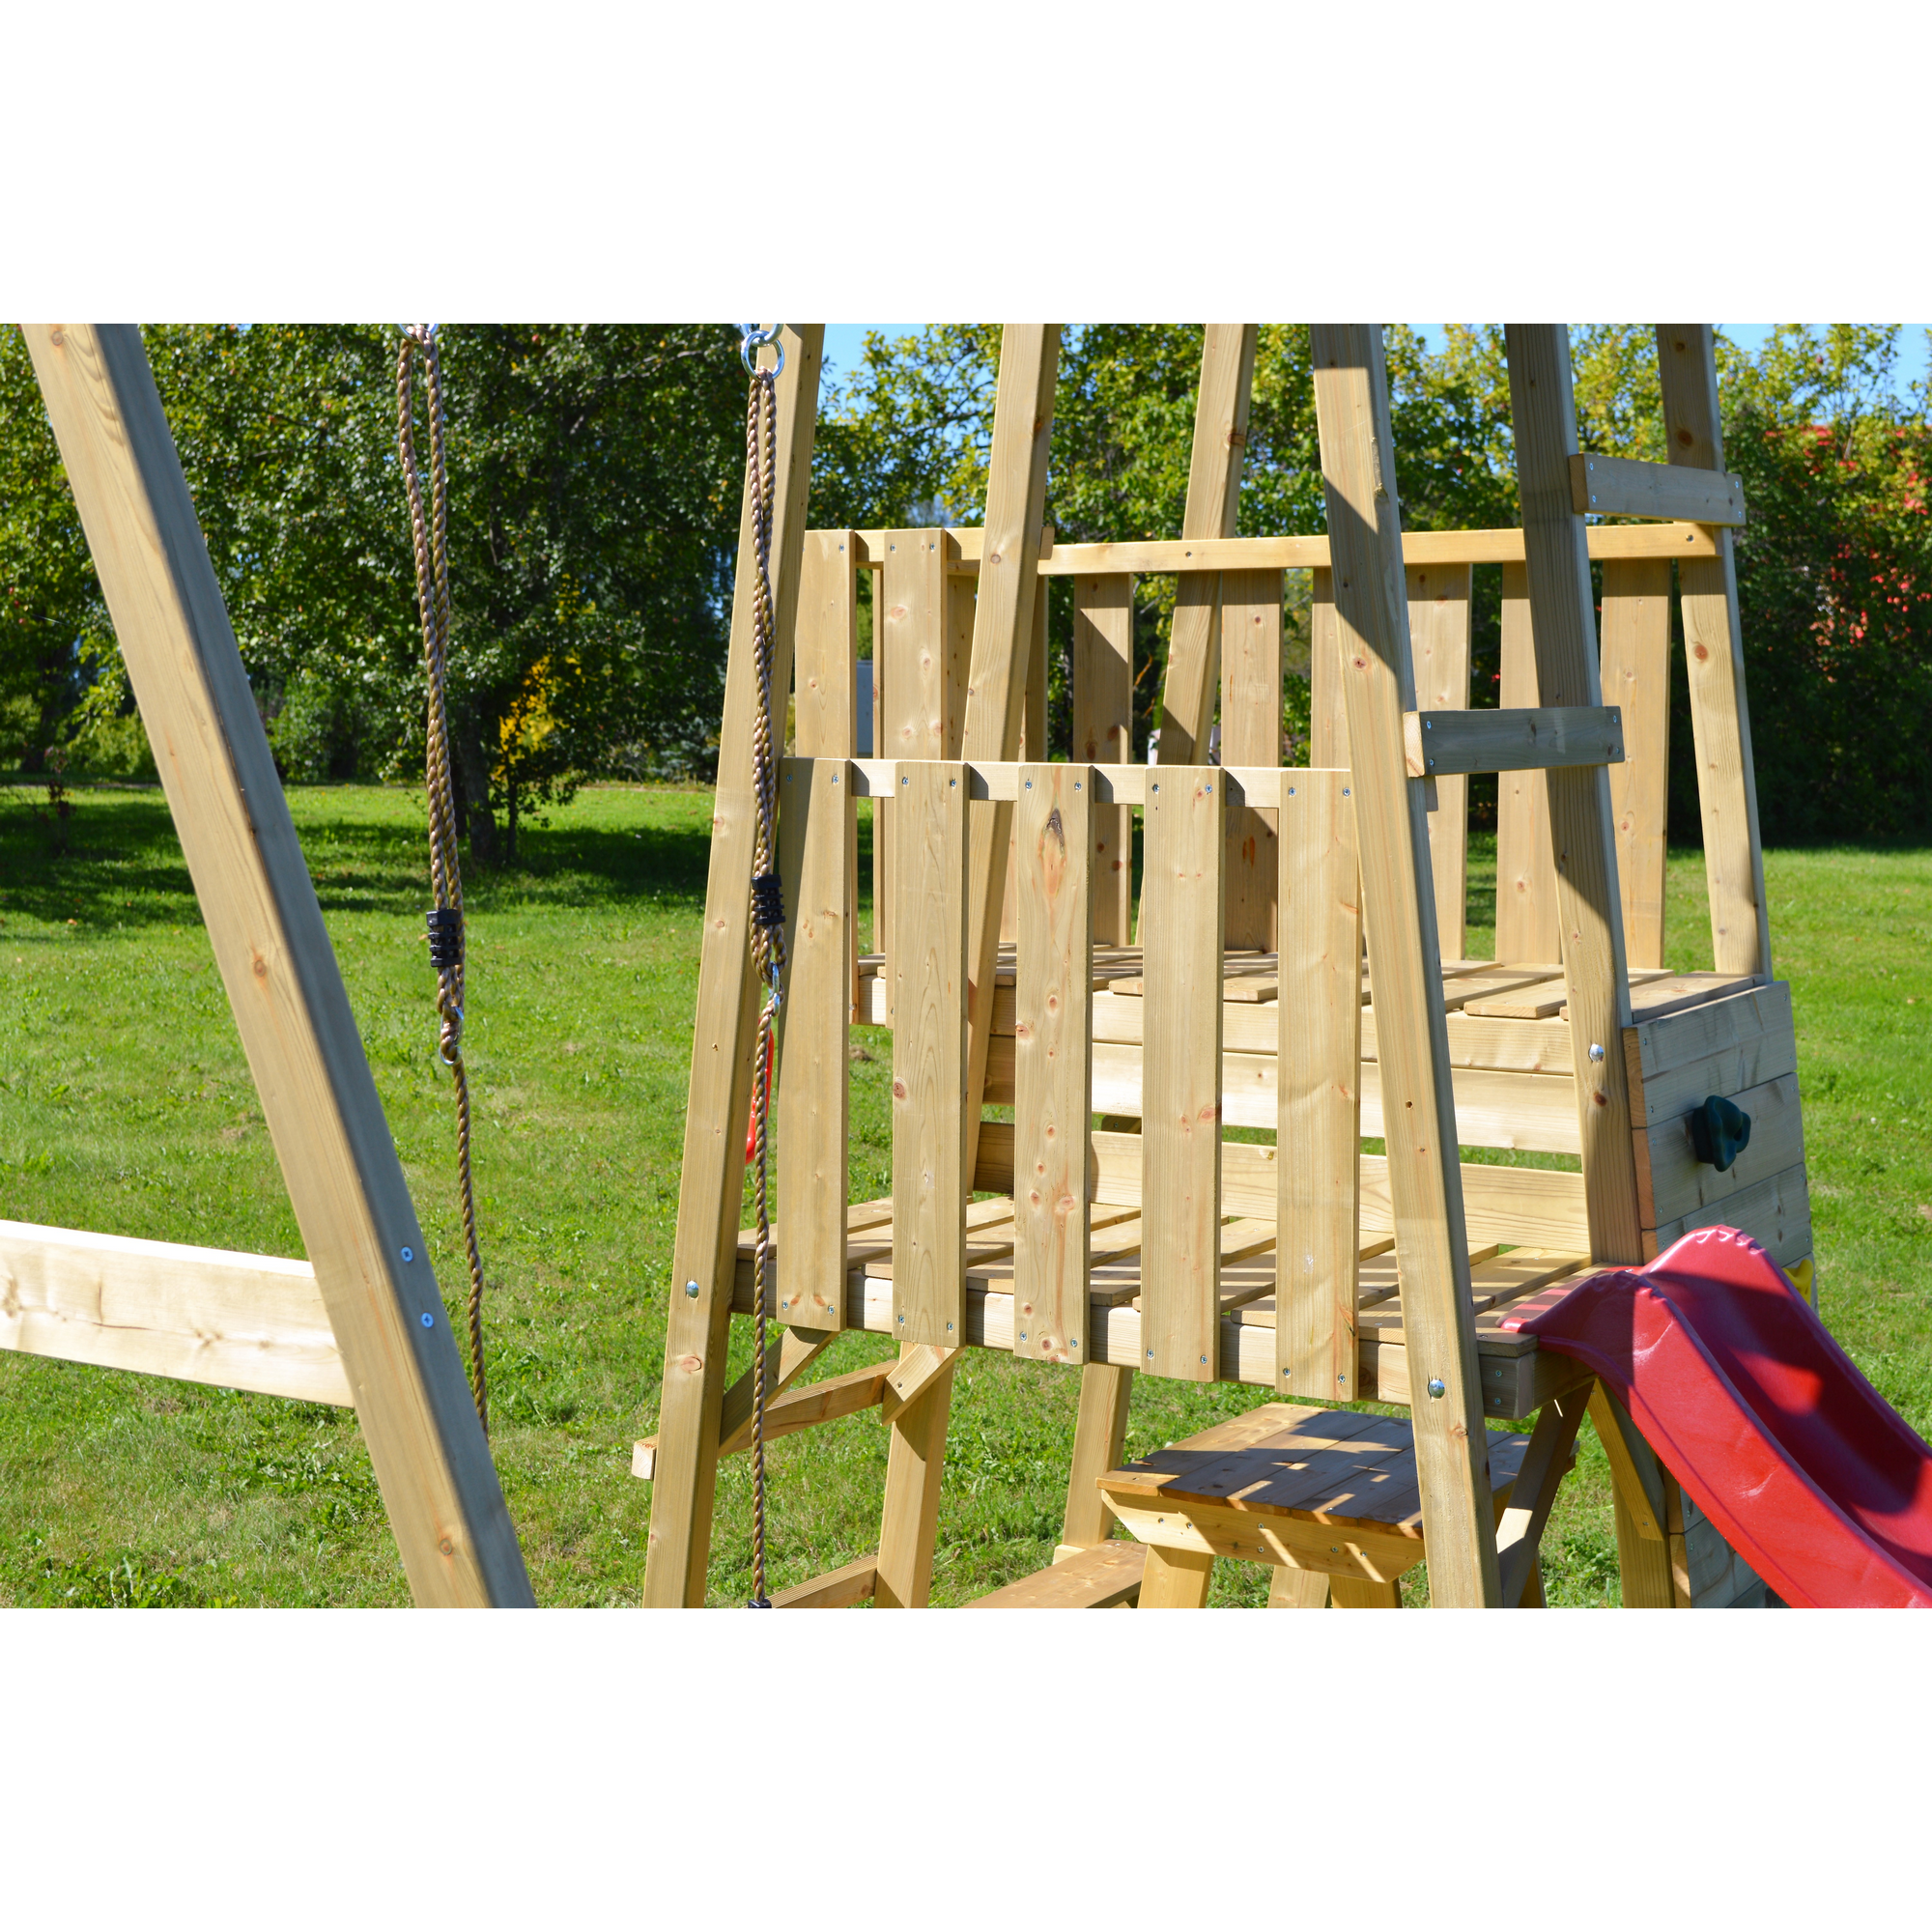 Holz-Spielturm 'Gorilla' natur Rutsche, Kletterwand, Schaukel und Picknicktisch 290 x 270 x 270 cm + product picture